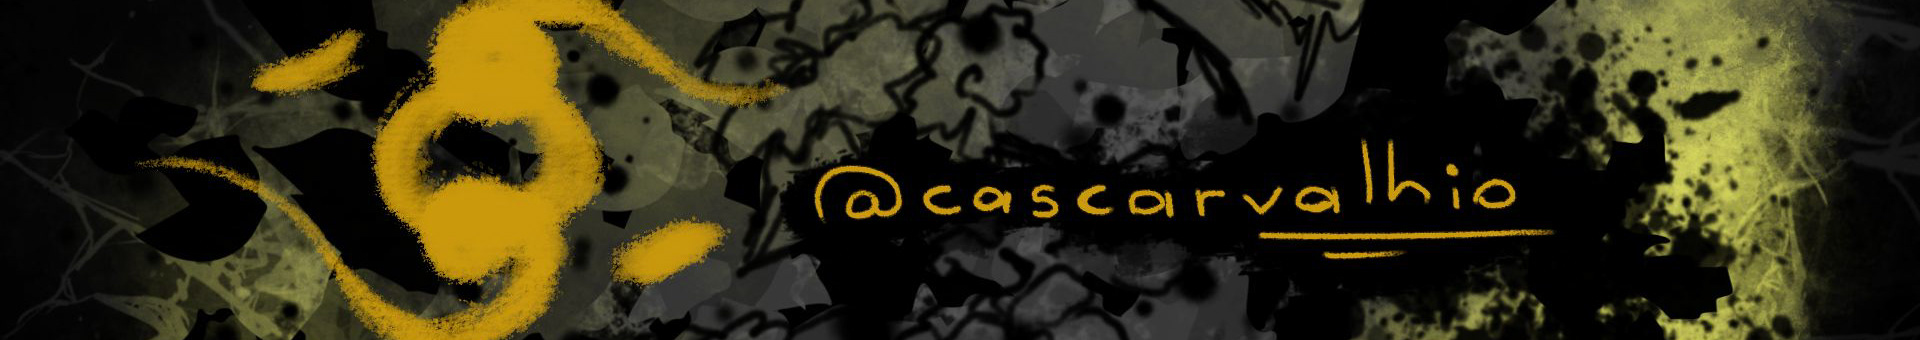 Cassio Carvalhio's profile banner